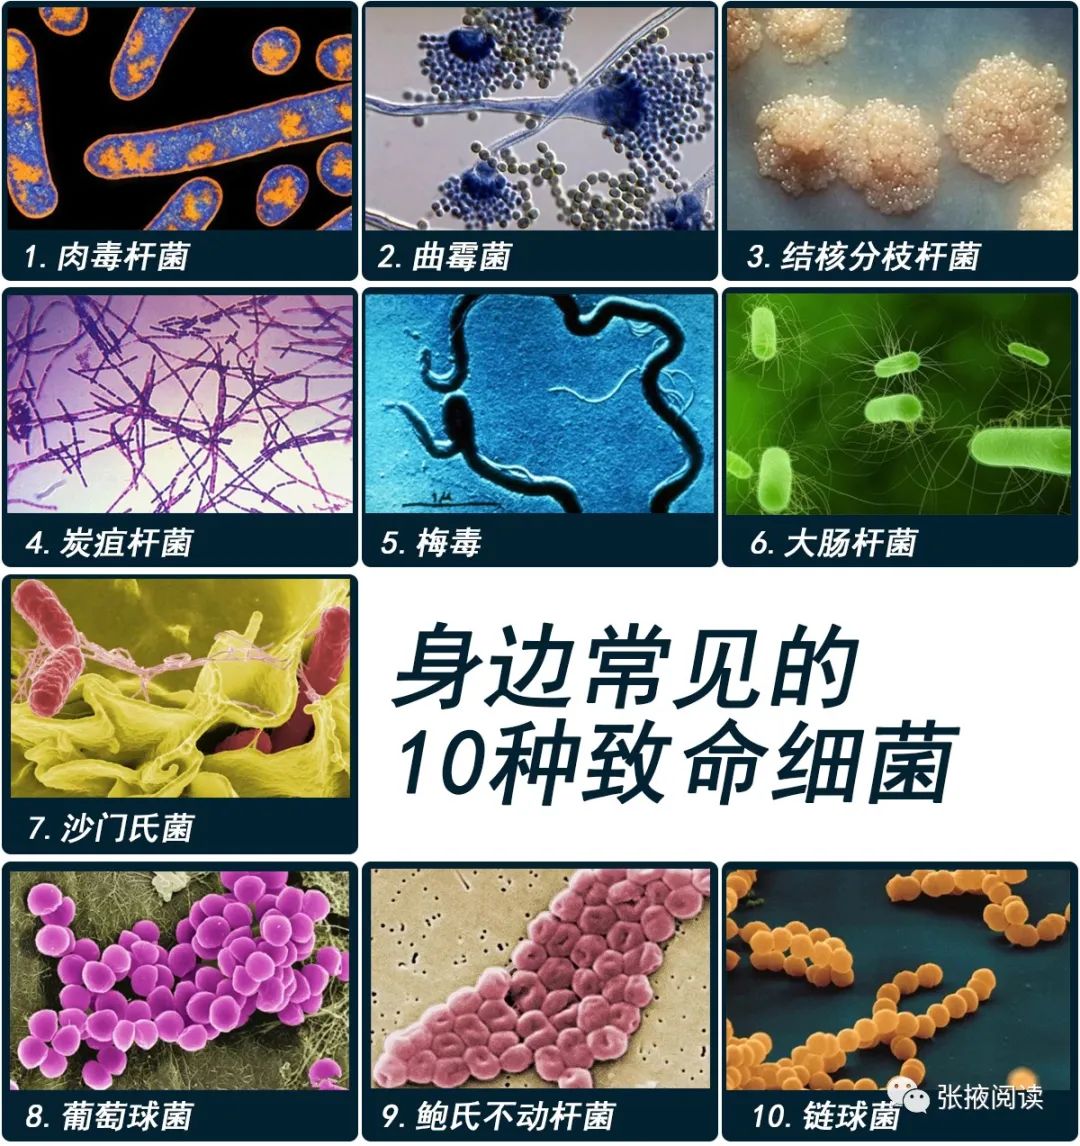 比如:你身边常见的10种致命细菌>>>>>>也是很"厉害"的家伙.